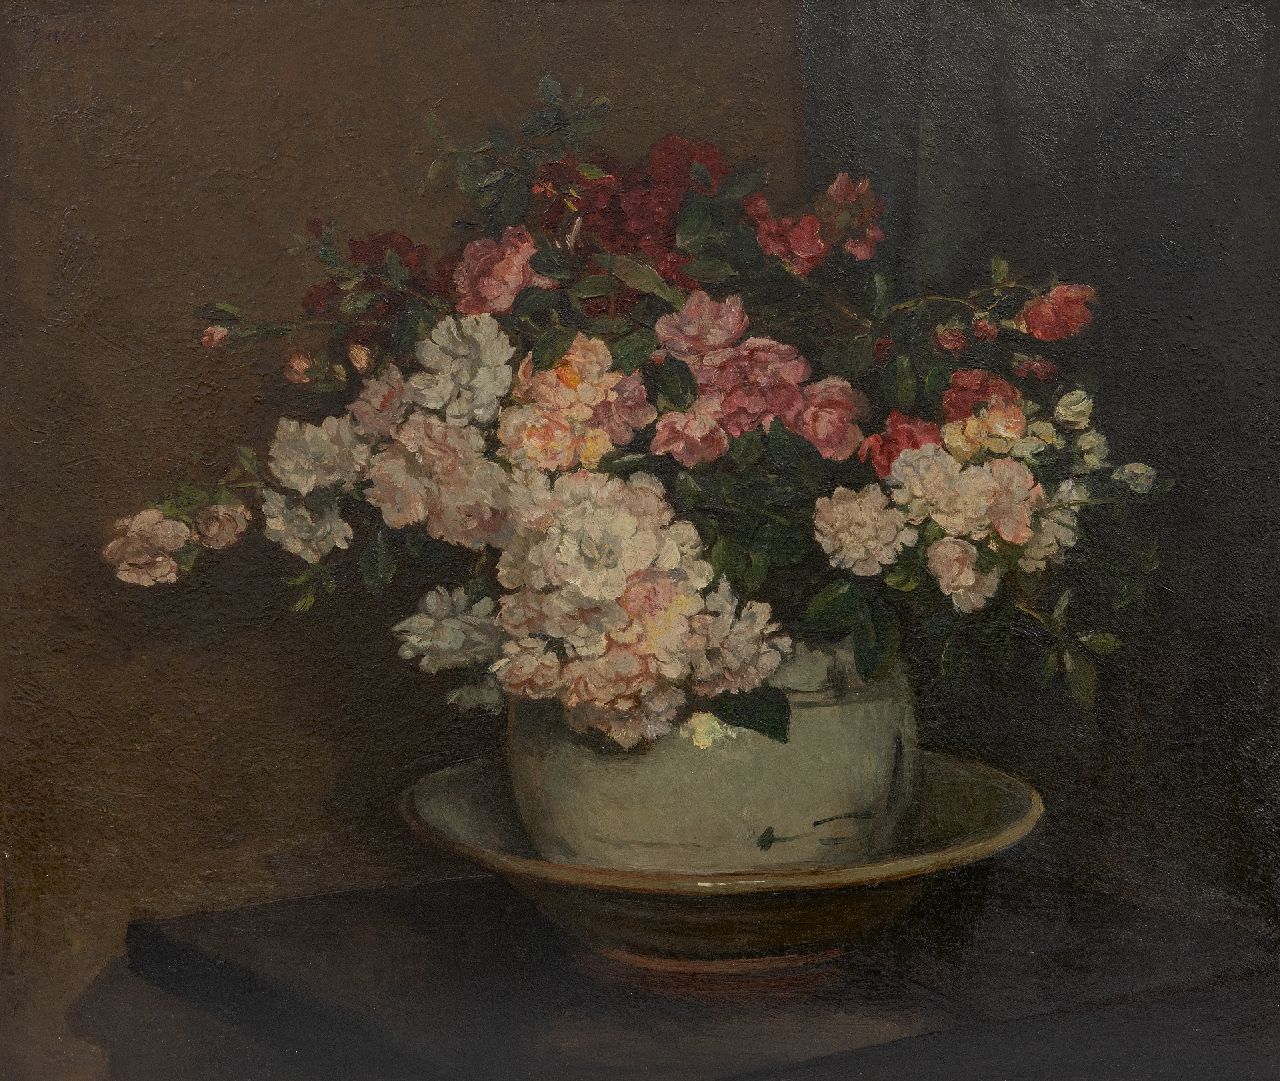 Akkeringa J.E.H.  | 'Johannes Evert' Hendrik Akkeringa, Spray roses, oil on canvas 46.3 x 54.5 cm, signed u.l.